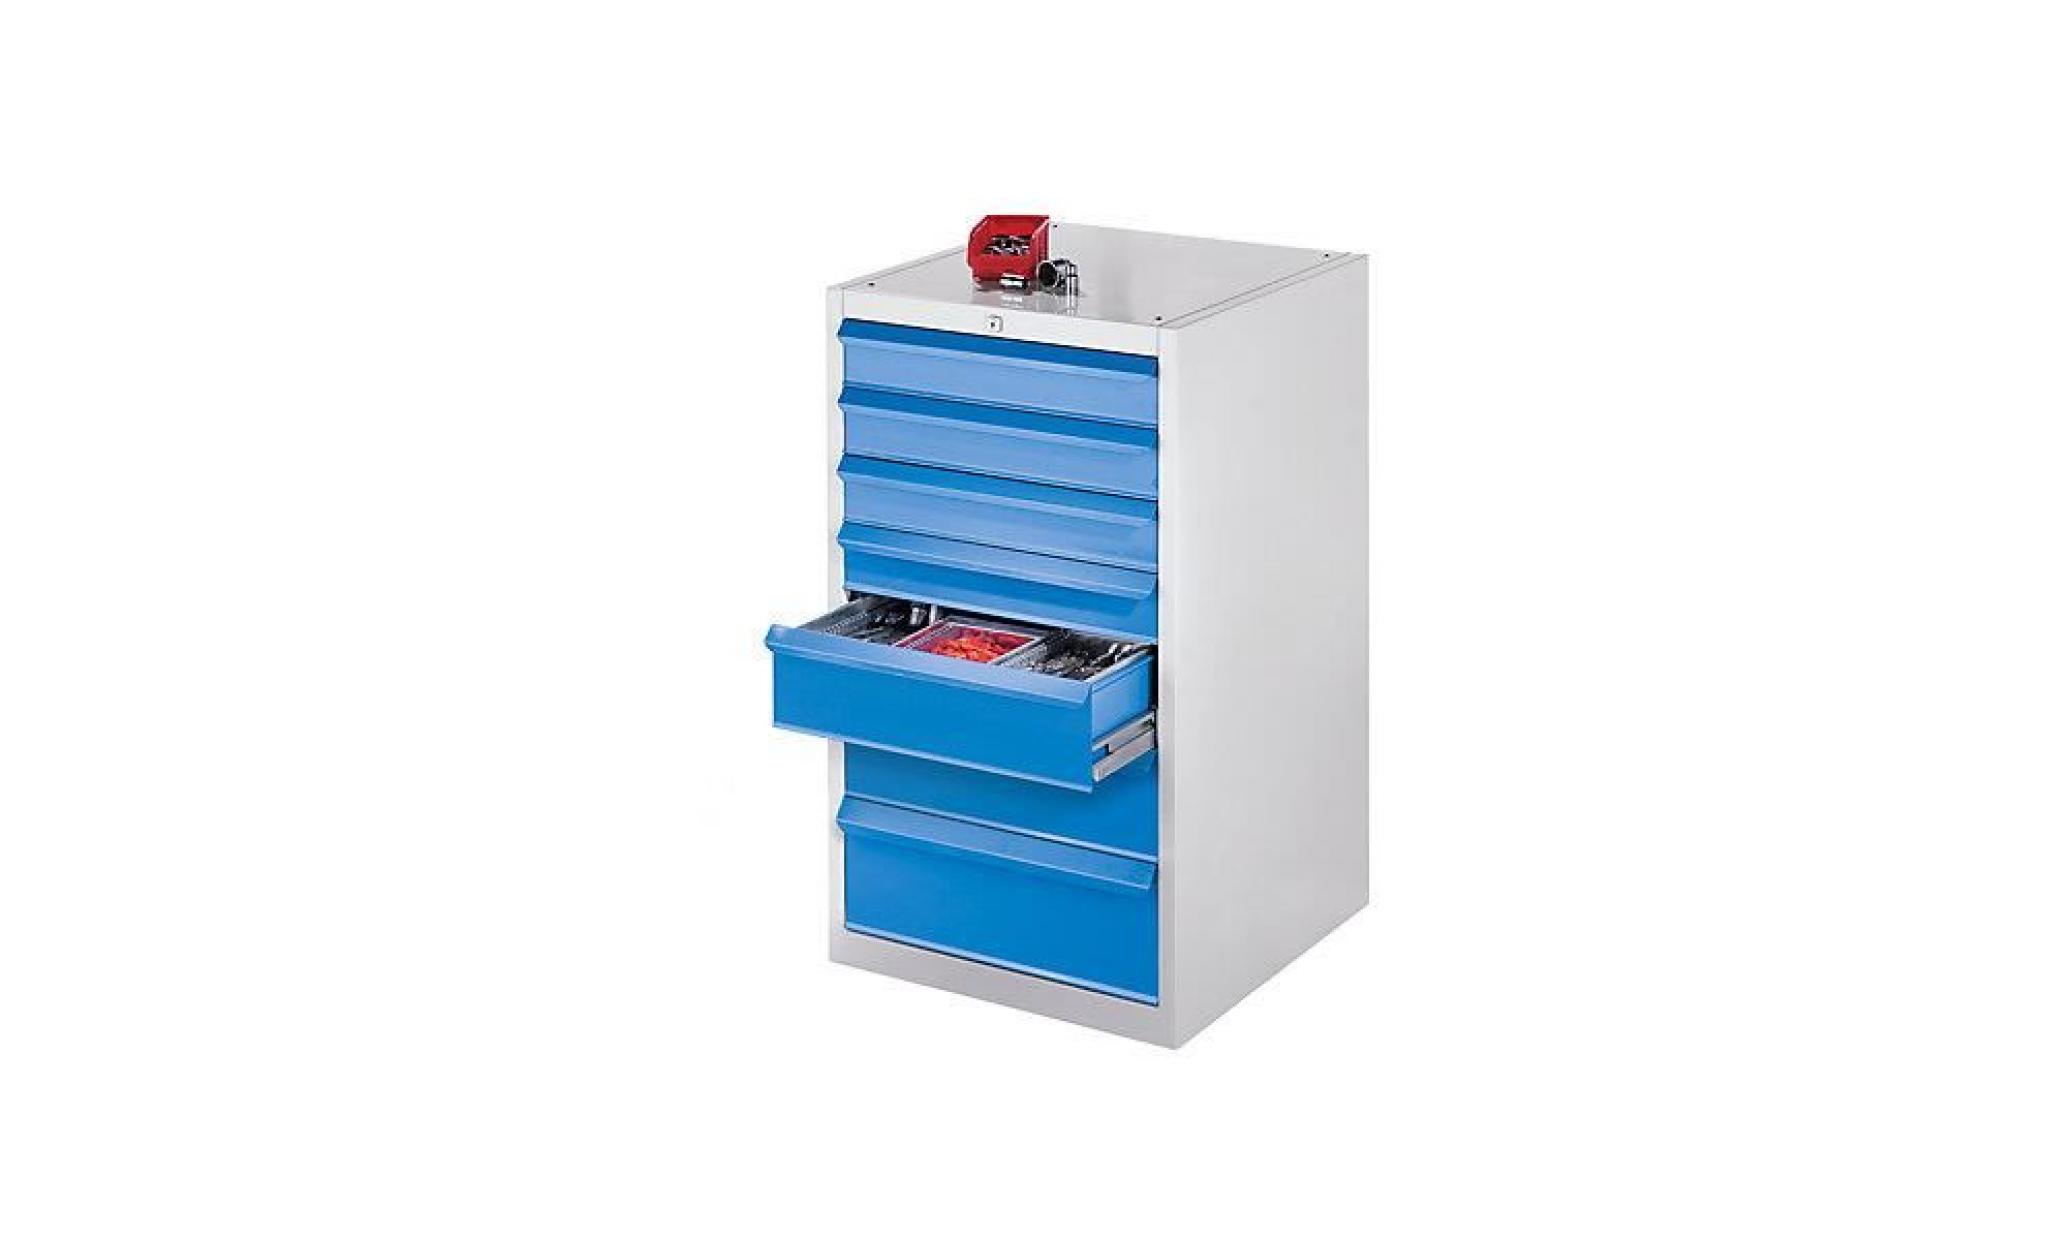 quipo armoire à outils, l x p 600 x 600 mm   hauteur 800 mm, 2 tiroirs, 1 porte   gris clair / bleu clair   armoire à outils armoire pas cher